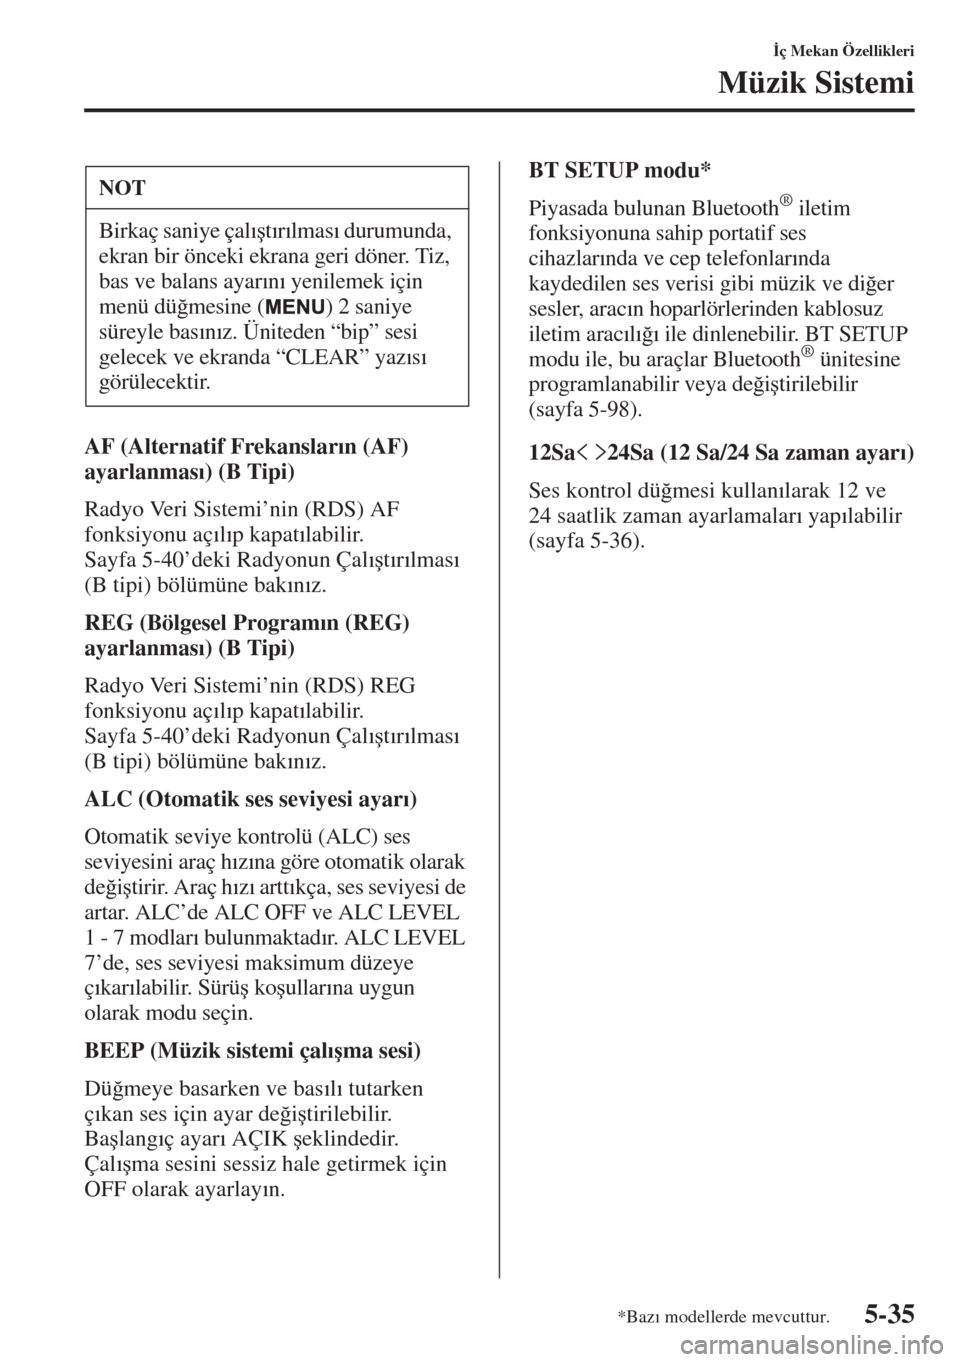 MAZDA MODEL 3 HATCHBACK 2015  Kullanım Kılavuzu (in Turkish) 5-35
�øç Mekan Özellikleri
Müzik Sistemi
AF (Alternatif Frekanslar�Õn (AF) 
ayarlanmas�Õ) (B Tipi)
Radyo Veri Sistemi’nin (RDS) AF 
fonksiyonu aç�Õl�Õp kapat�Õlabilir.
Sayfa 5-40’deki Ra